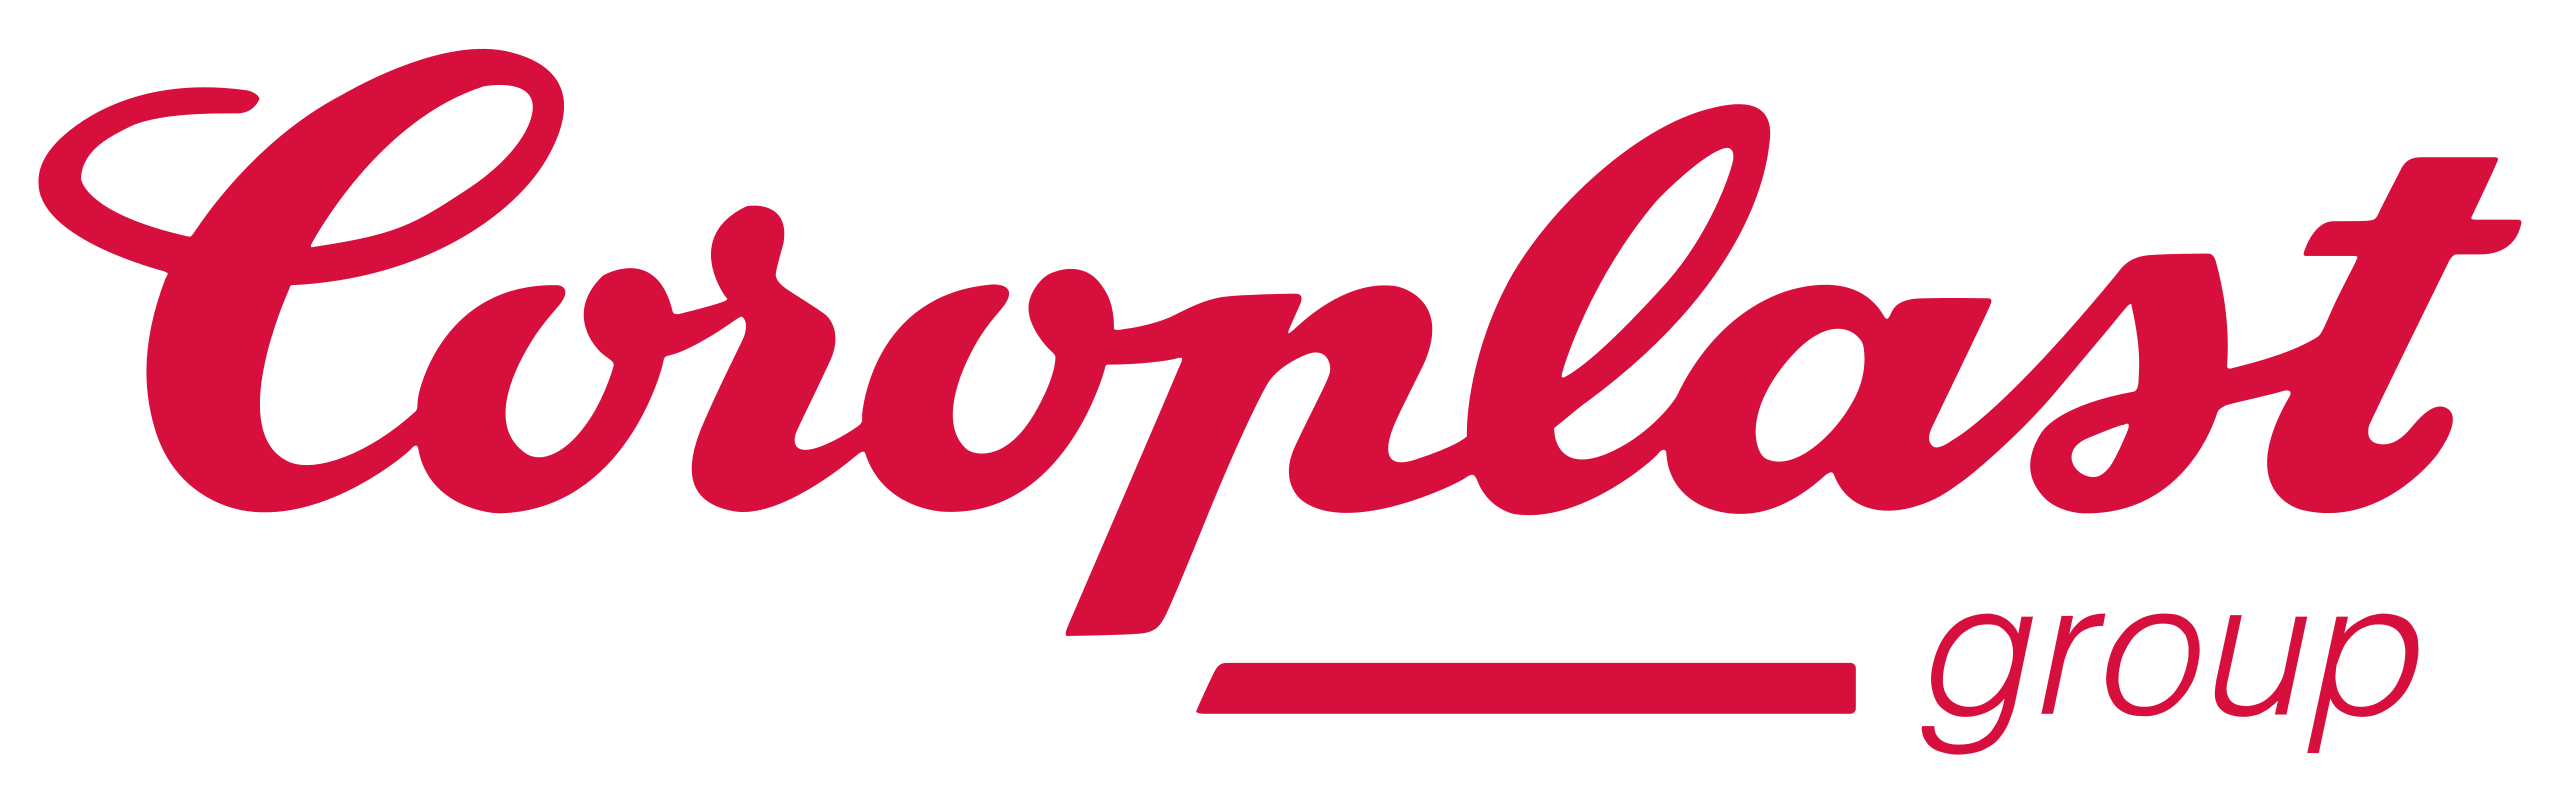 Логотип Coroplast